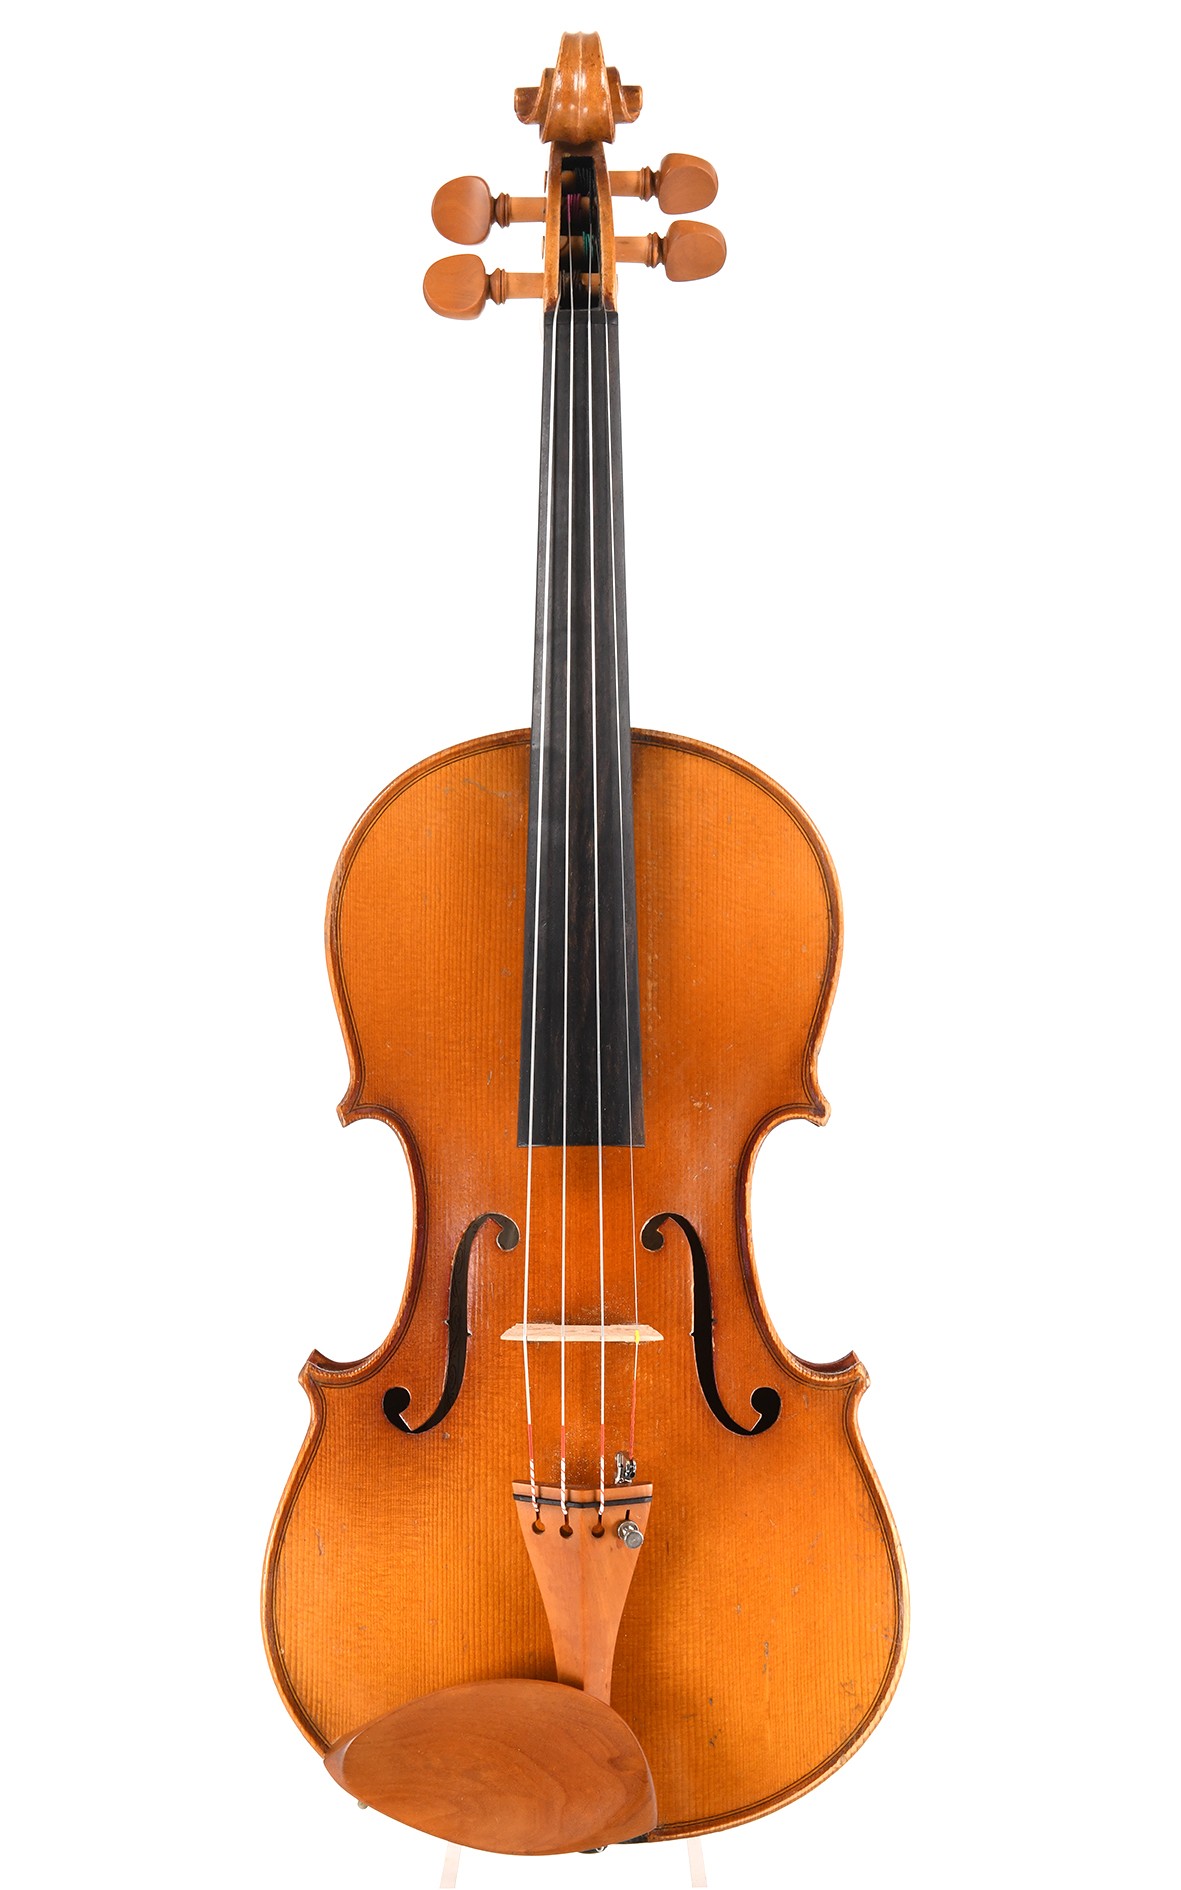 Vieux violon de Mittenwald, vers 1930 - violon d'orchestre